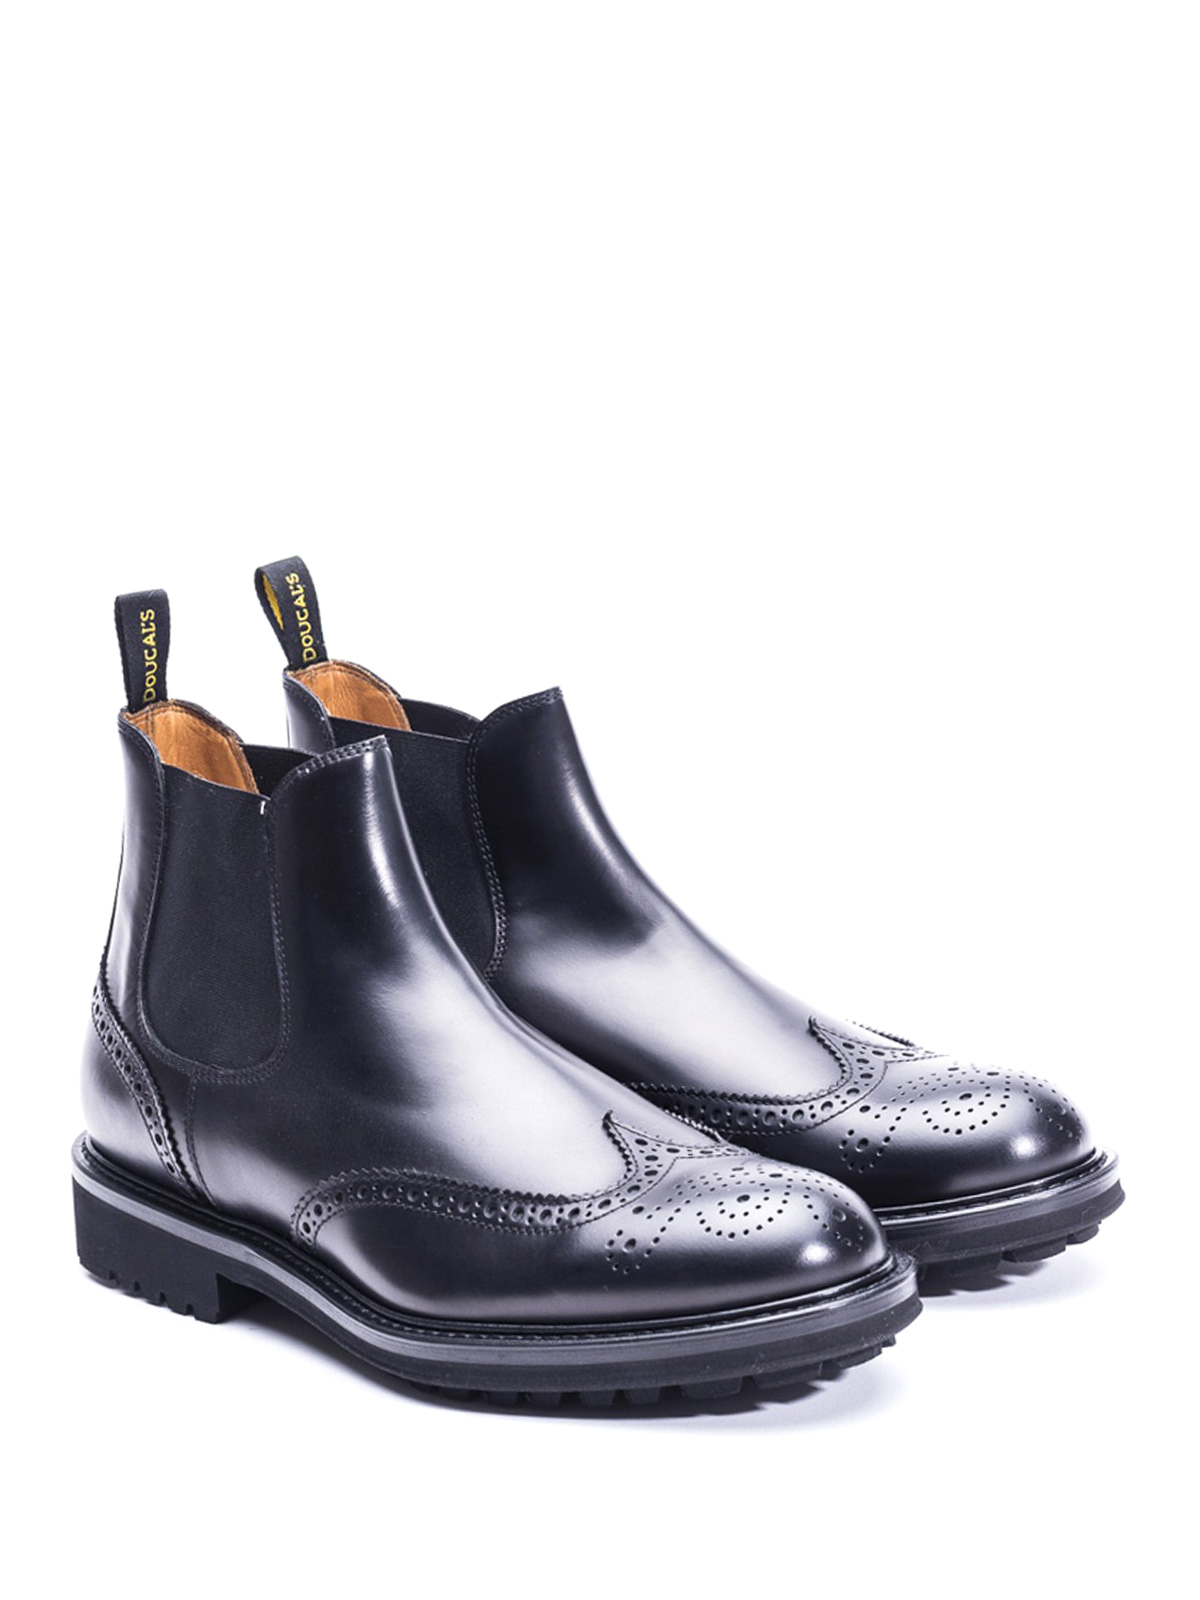 black brogue chelsea boots